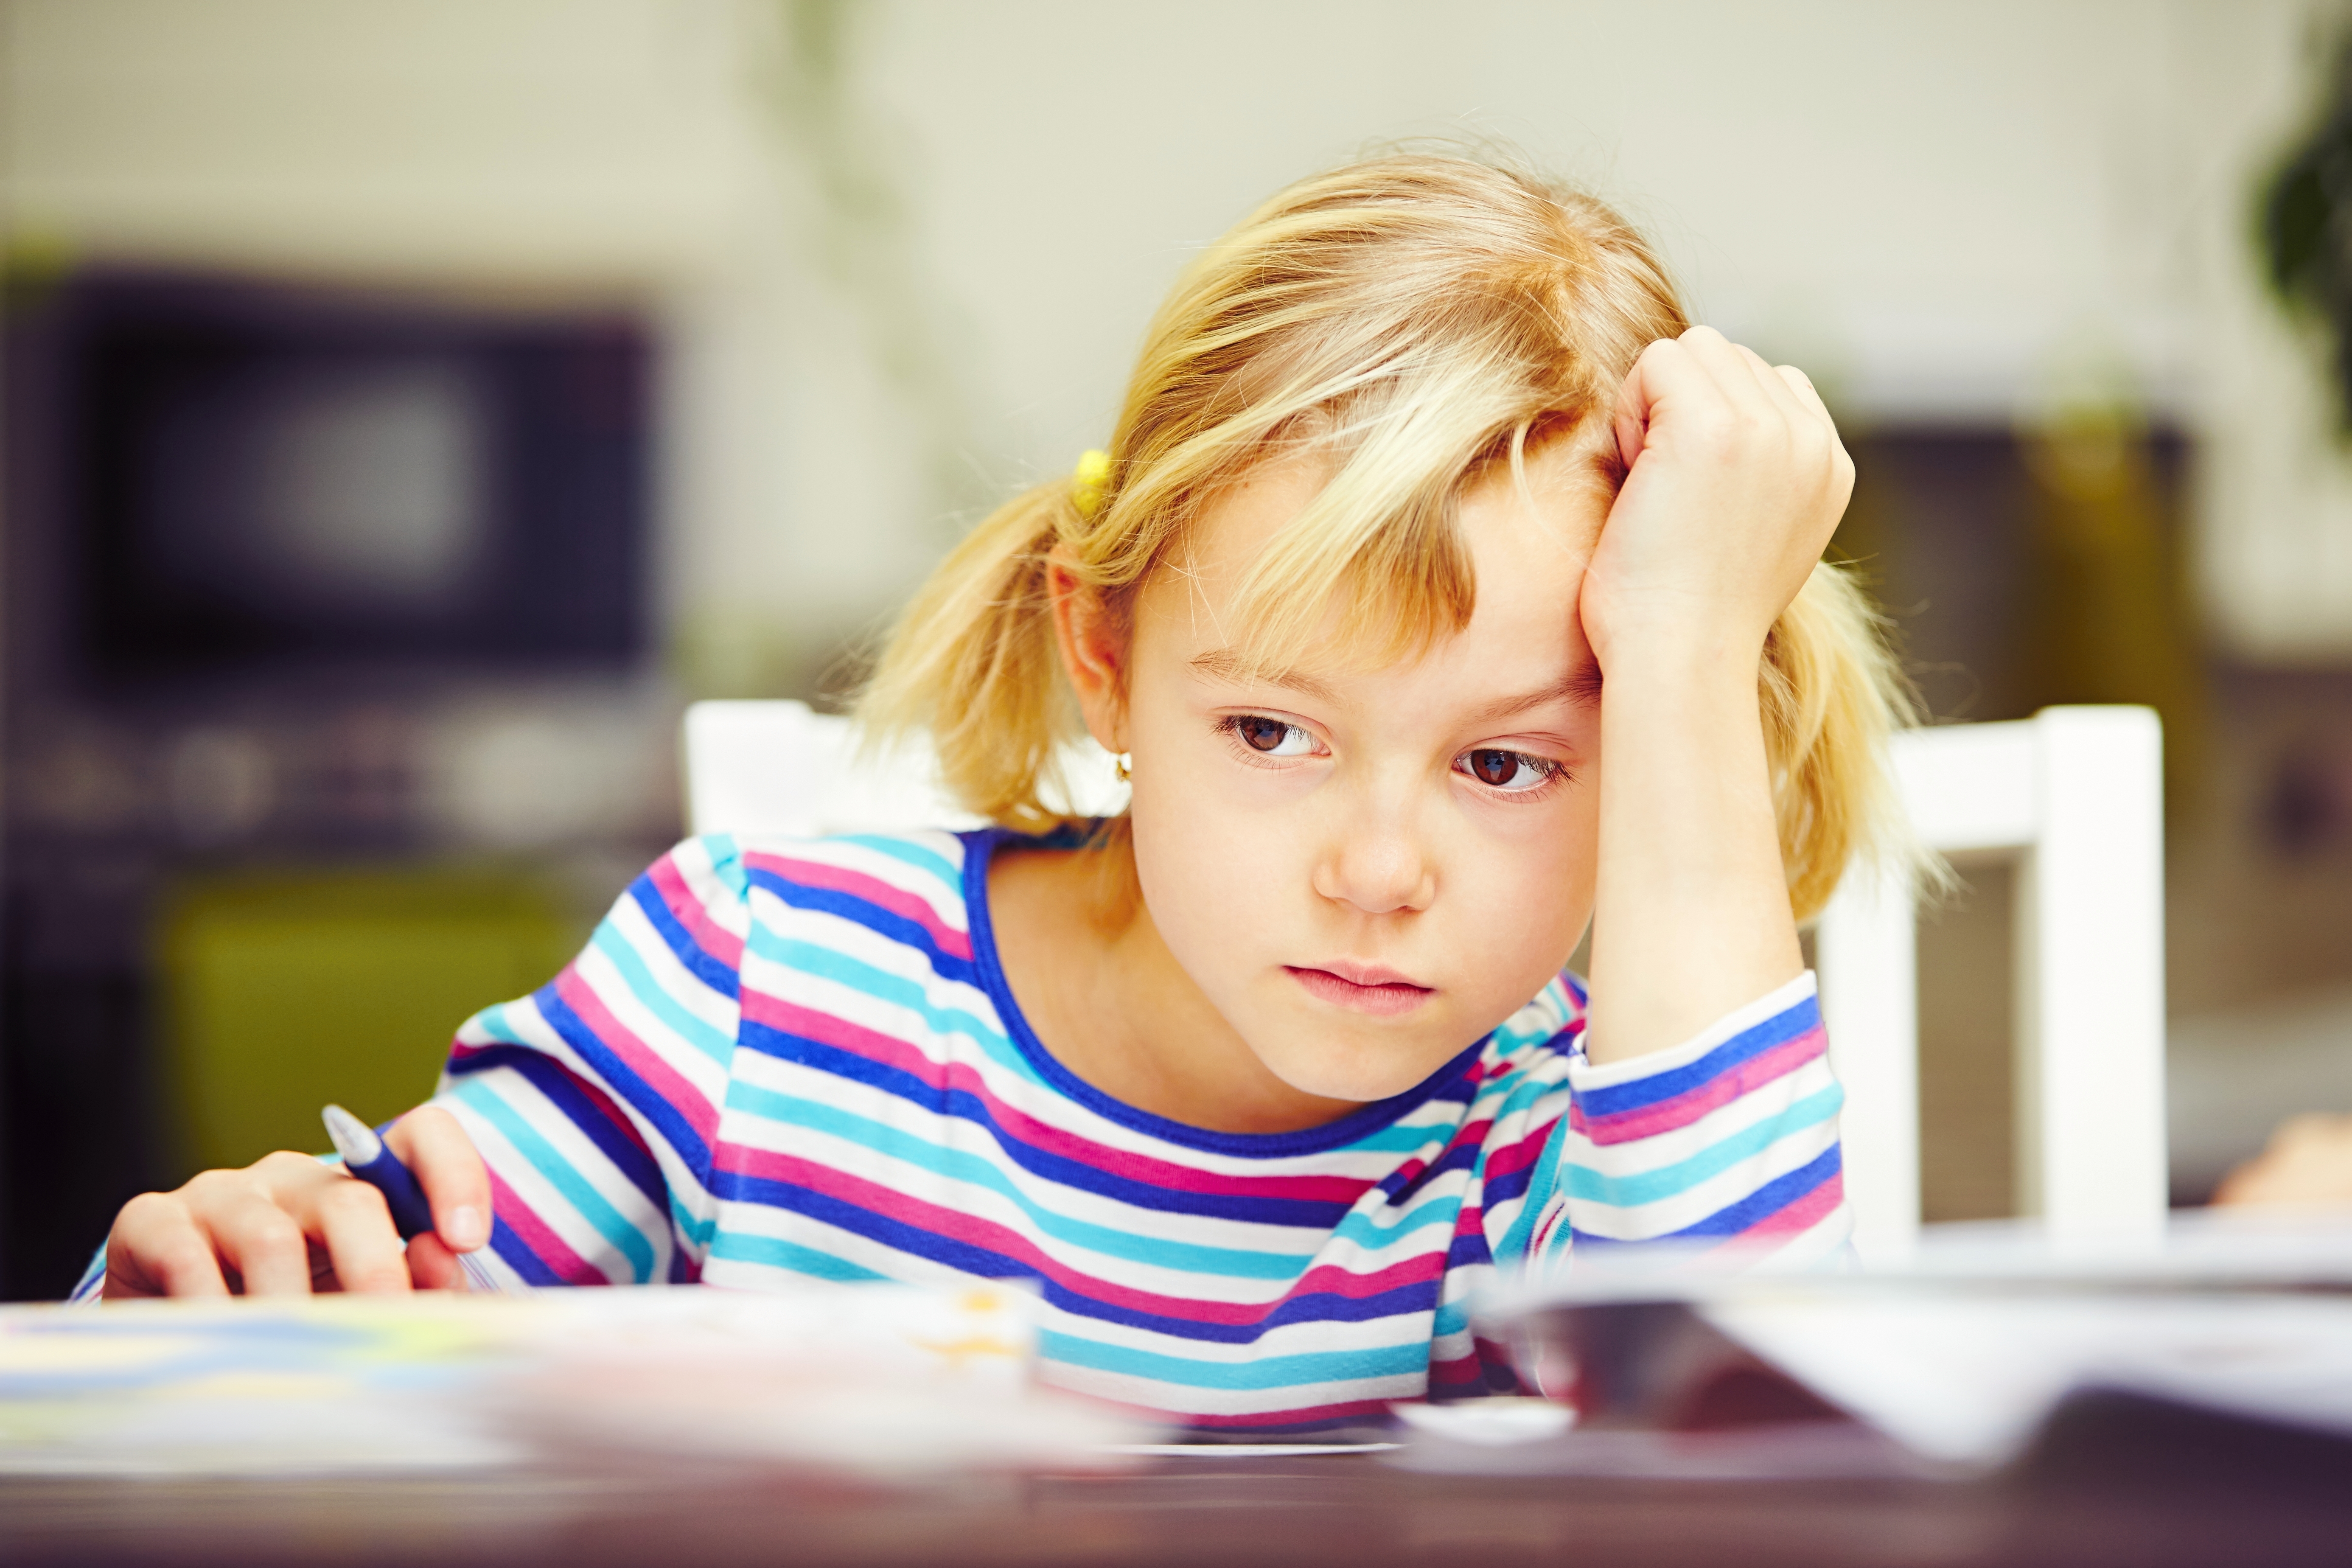 Little girl sulking in her desk | Source: Shutterstock